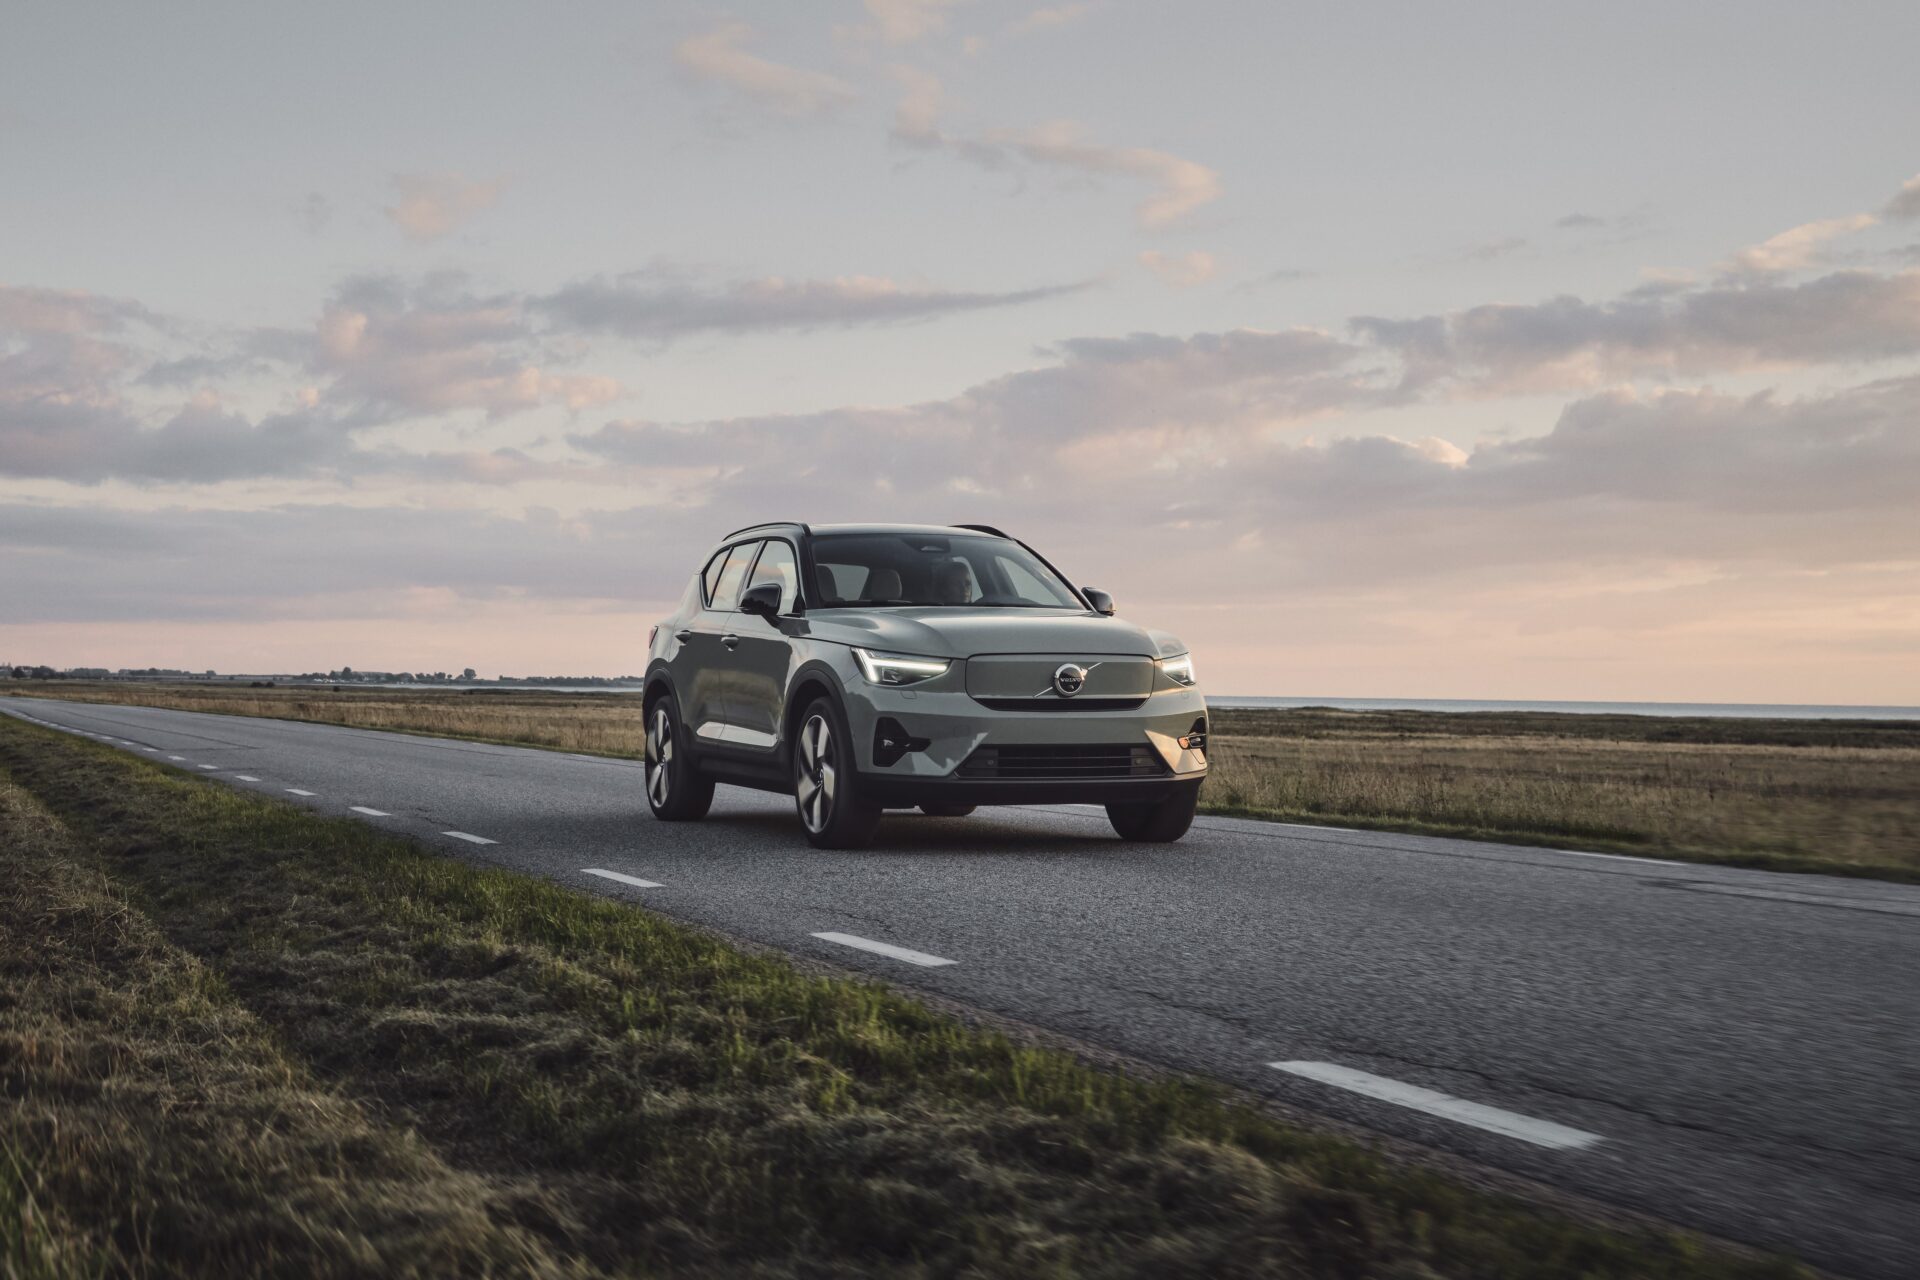 La Volvo XC40 Recharge incarne les valeurs de qualité, sécurité et durabilité du fabricant suédois. Offrant une autonomie jusqu'à 472 kilomètres, elle est idéale pour les conducteurs cherchant un véhicule mélangeant luxe, technologie et respect de l’environnement.